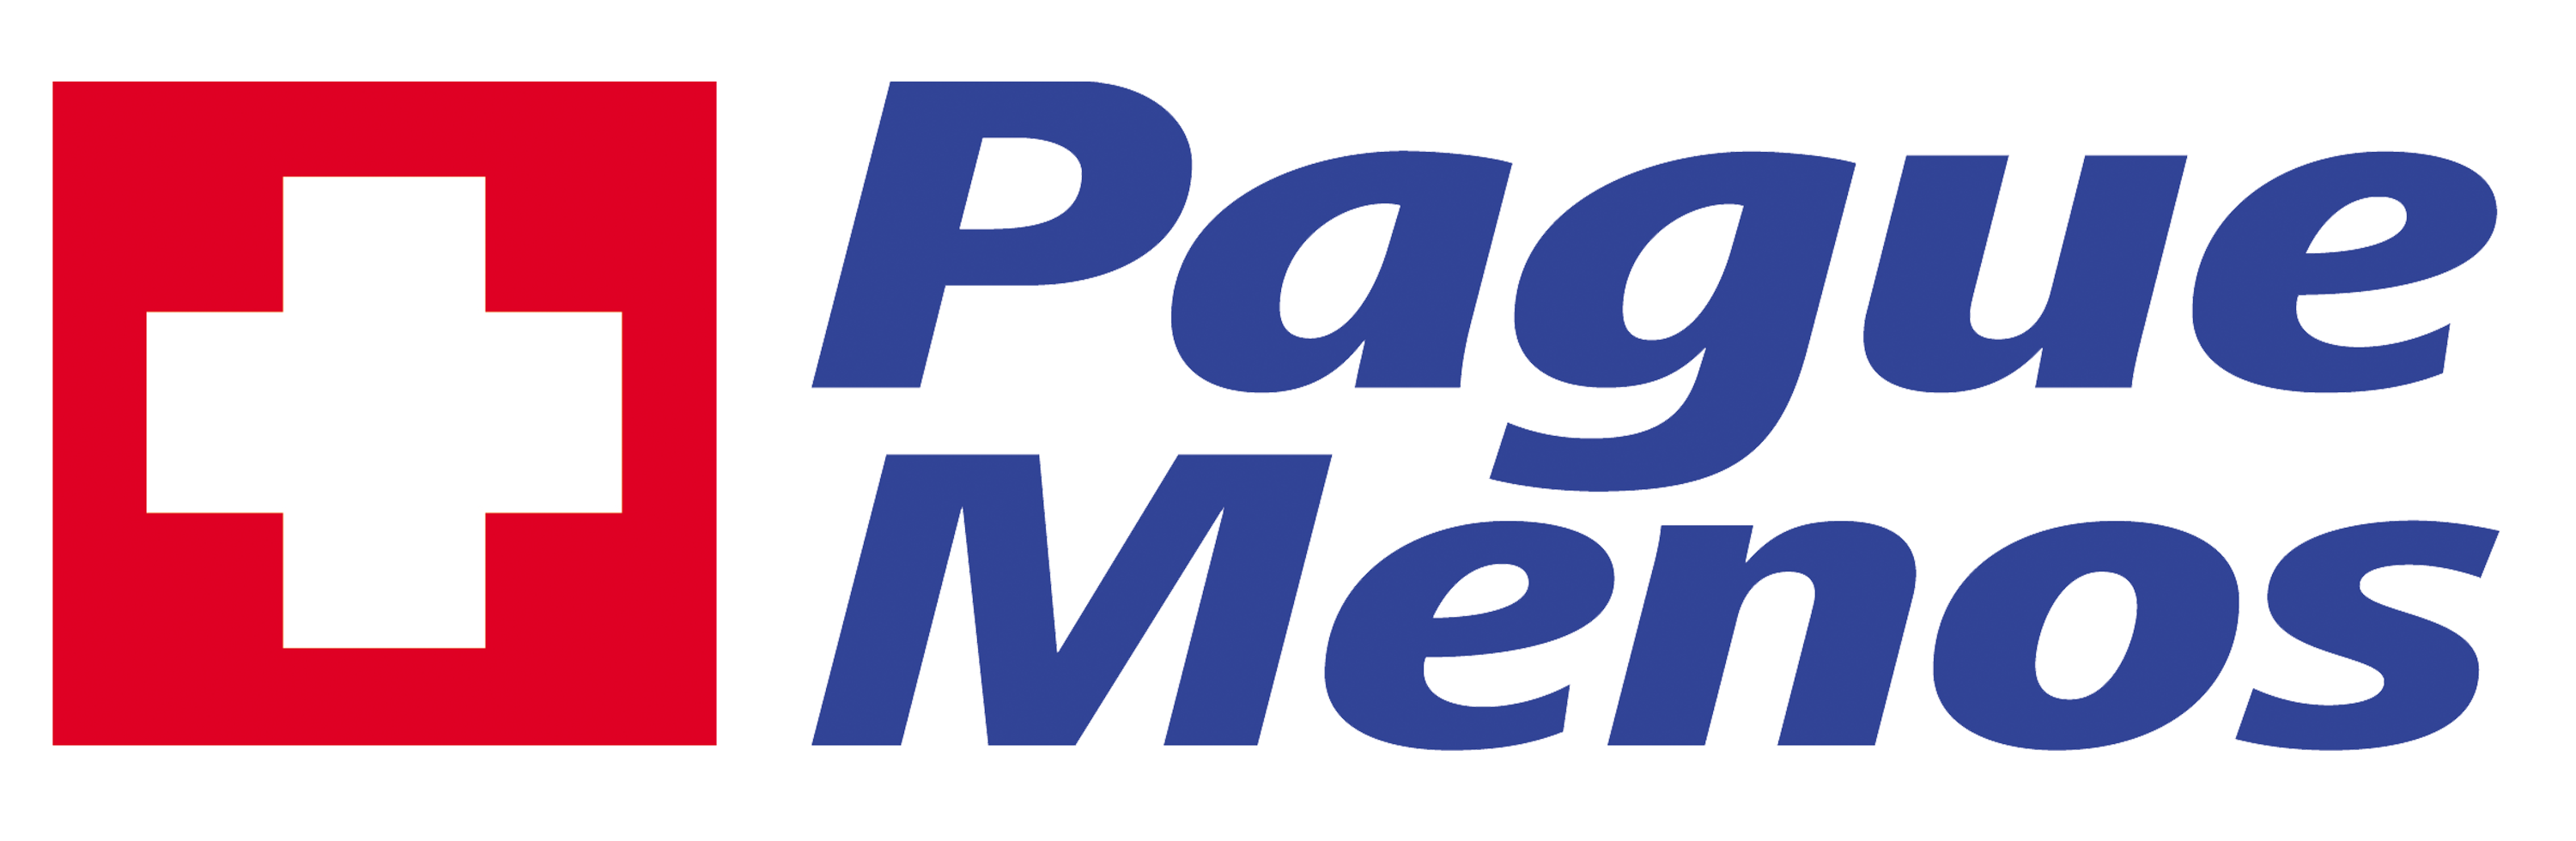 Farmacia Pague Menos- Paulo Afonso BA